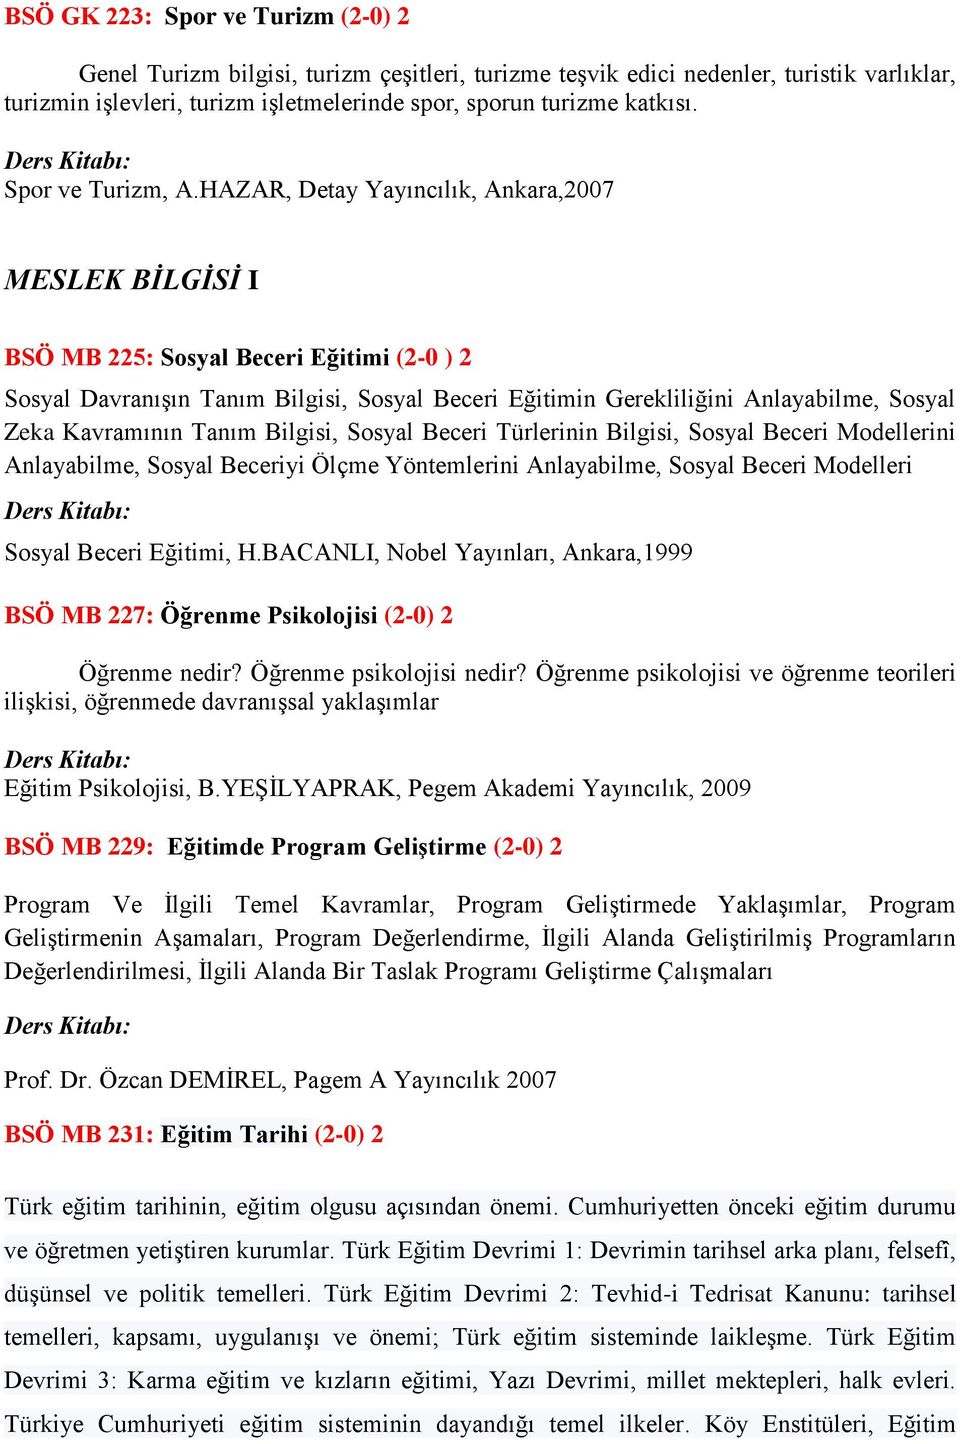 HAZAR, Detay Yayıncılık, Ankara,2007 MESLEK BİLGİSİ I BSÖ MB 225: Sosyal Beceri Eğitimi (2-0 ) 2 Sosyal Davranışın Tanım Bilgisi, Sosyal Beceri Eğitimin Gerekliliğini Anlayabilme, Sosyal Zeka